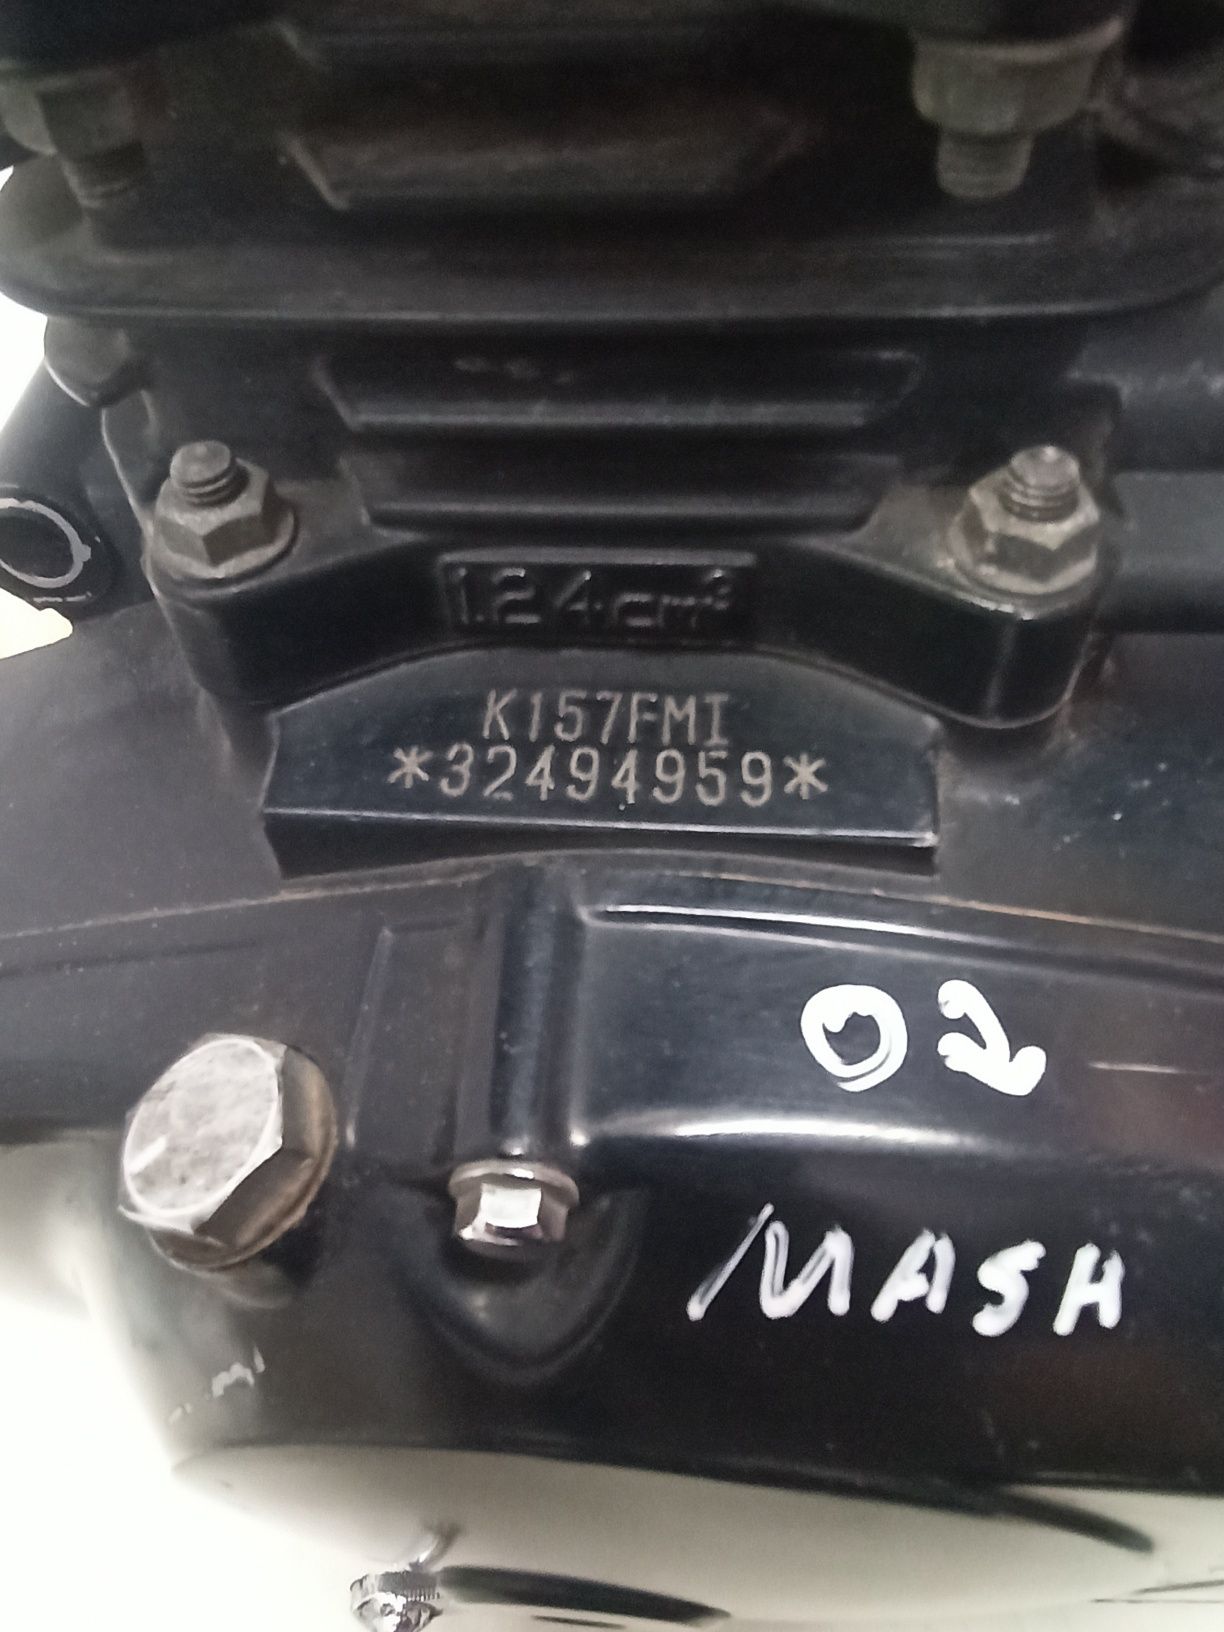 Motor Mash Seventy 125cc